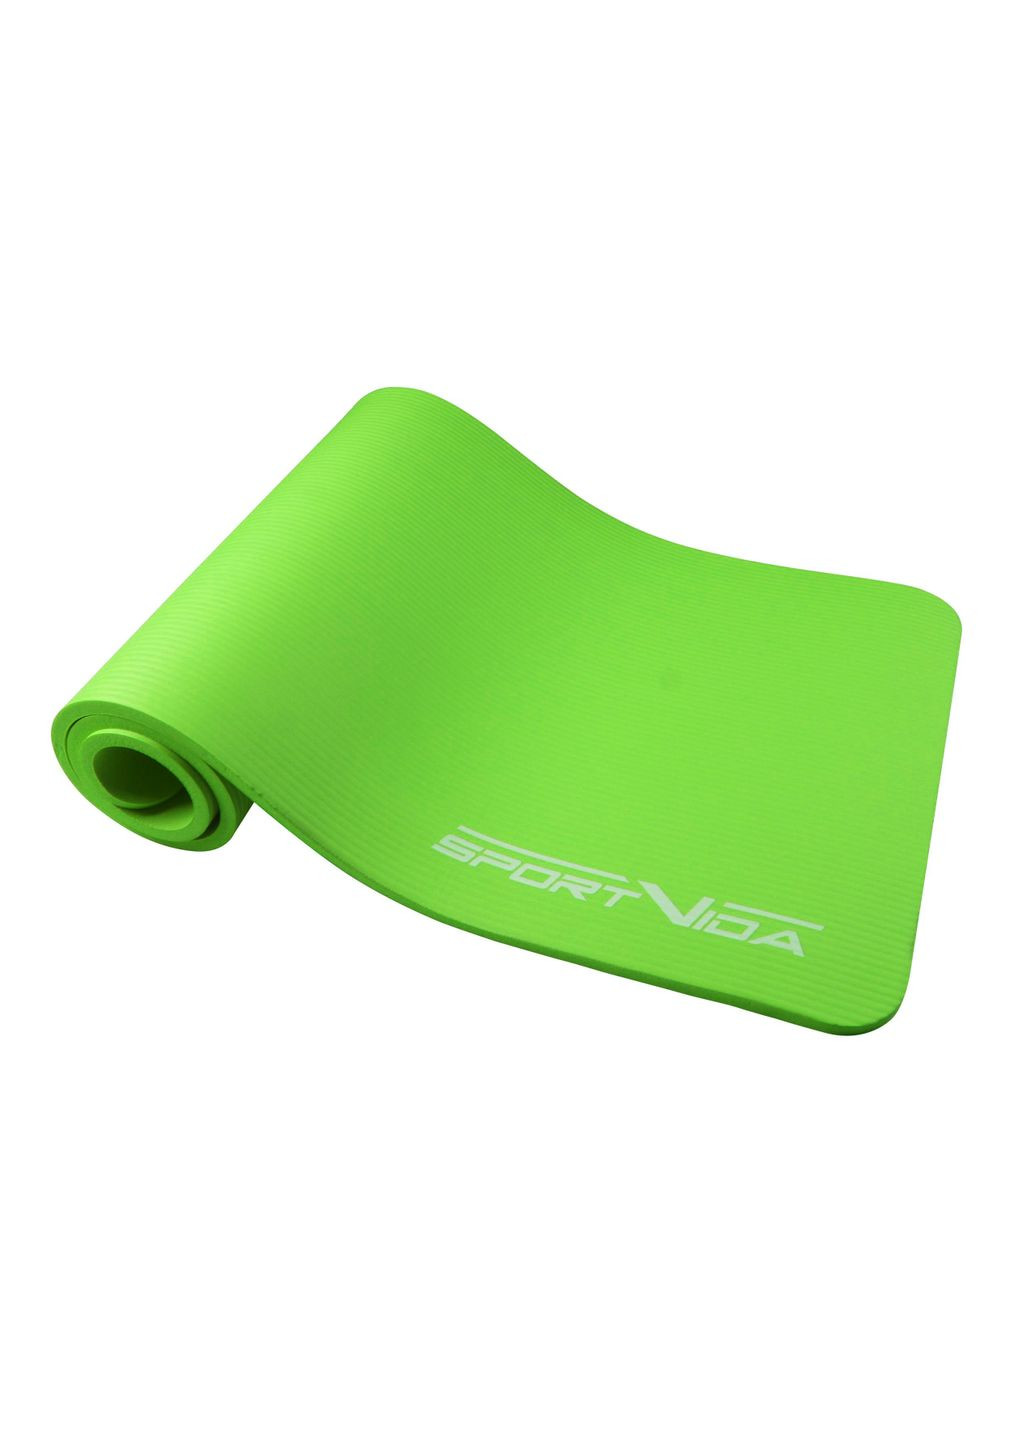 Коврик (мат) спортивный NBR 180 x 60 x 1 см для йоги и фитнеса SVHK0248 Green SportVida sv-hk0248 (275095908)